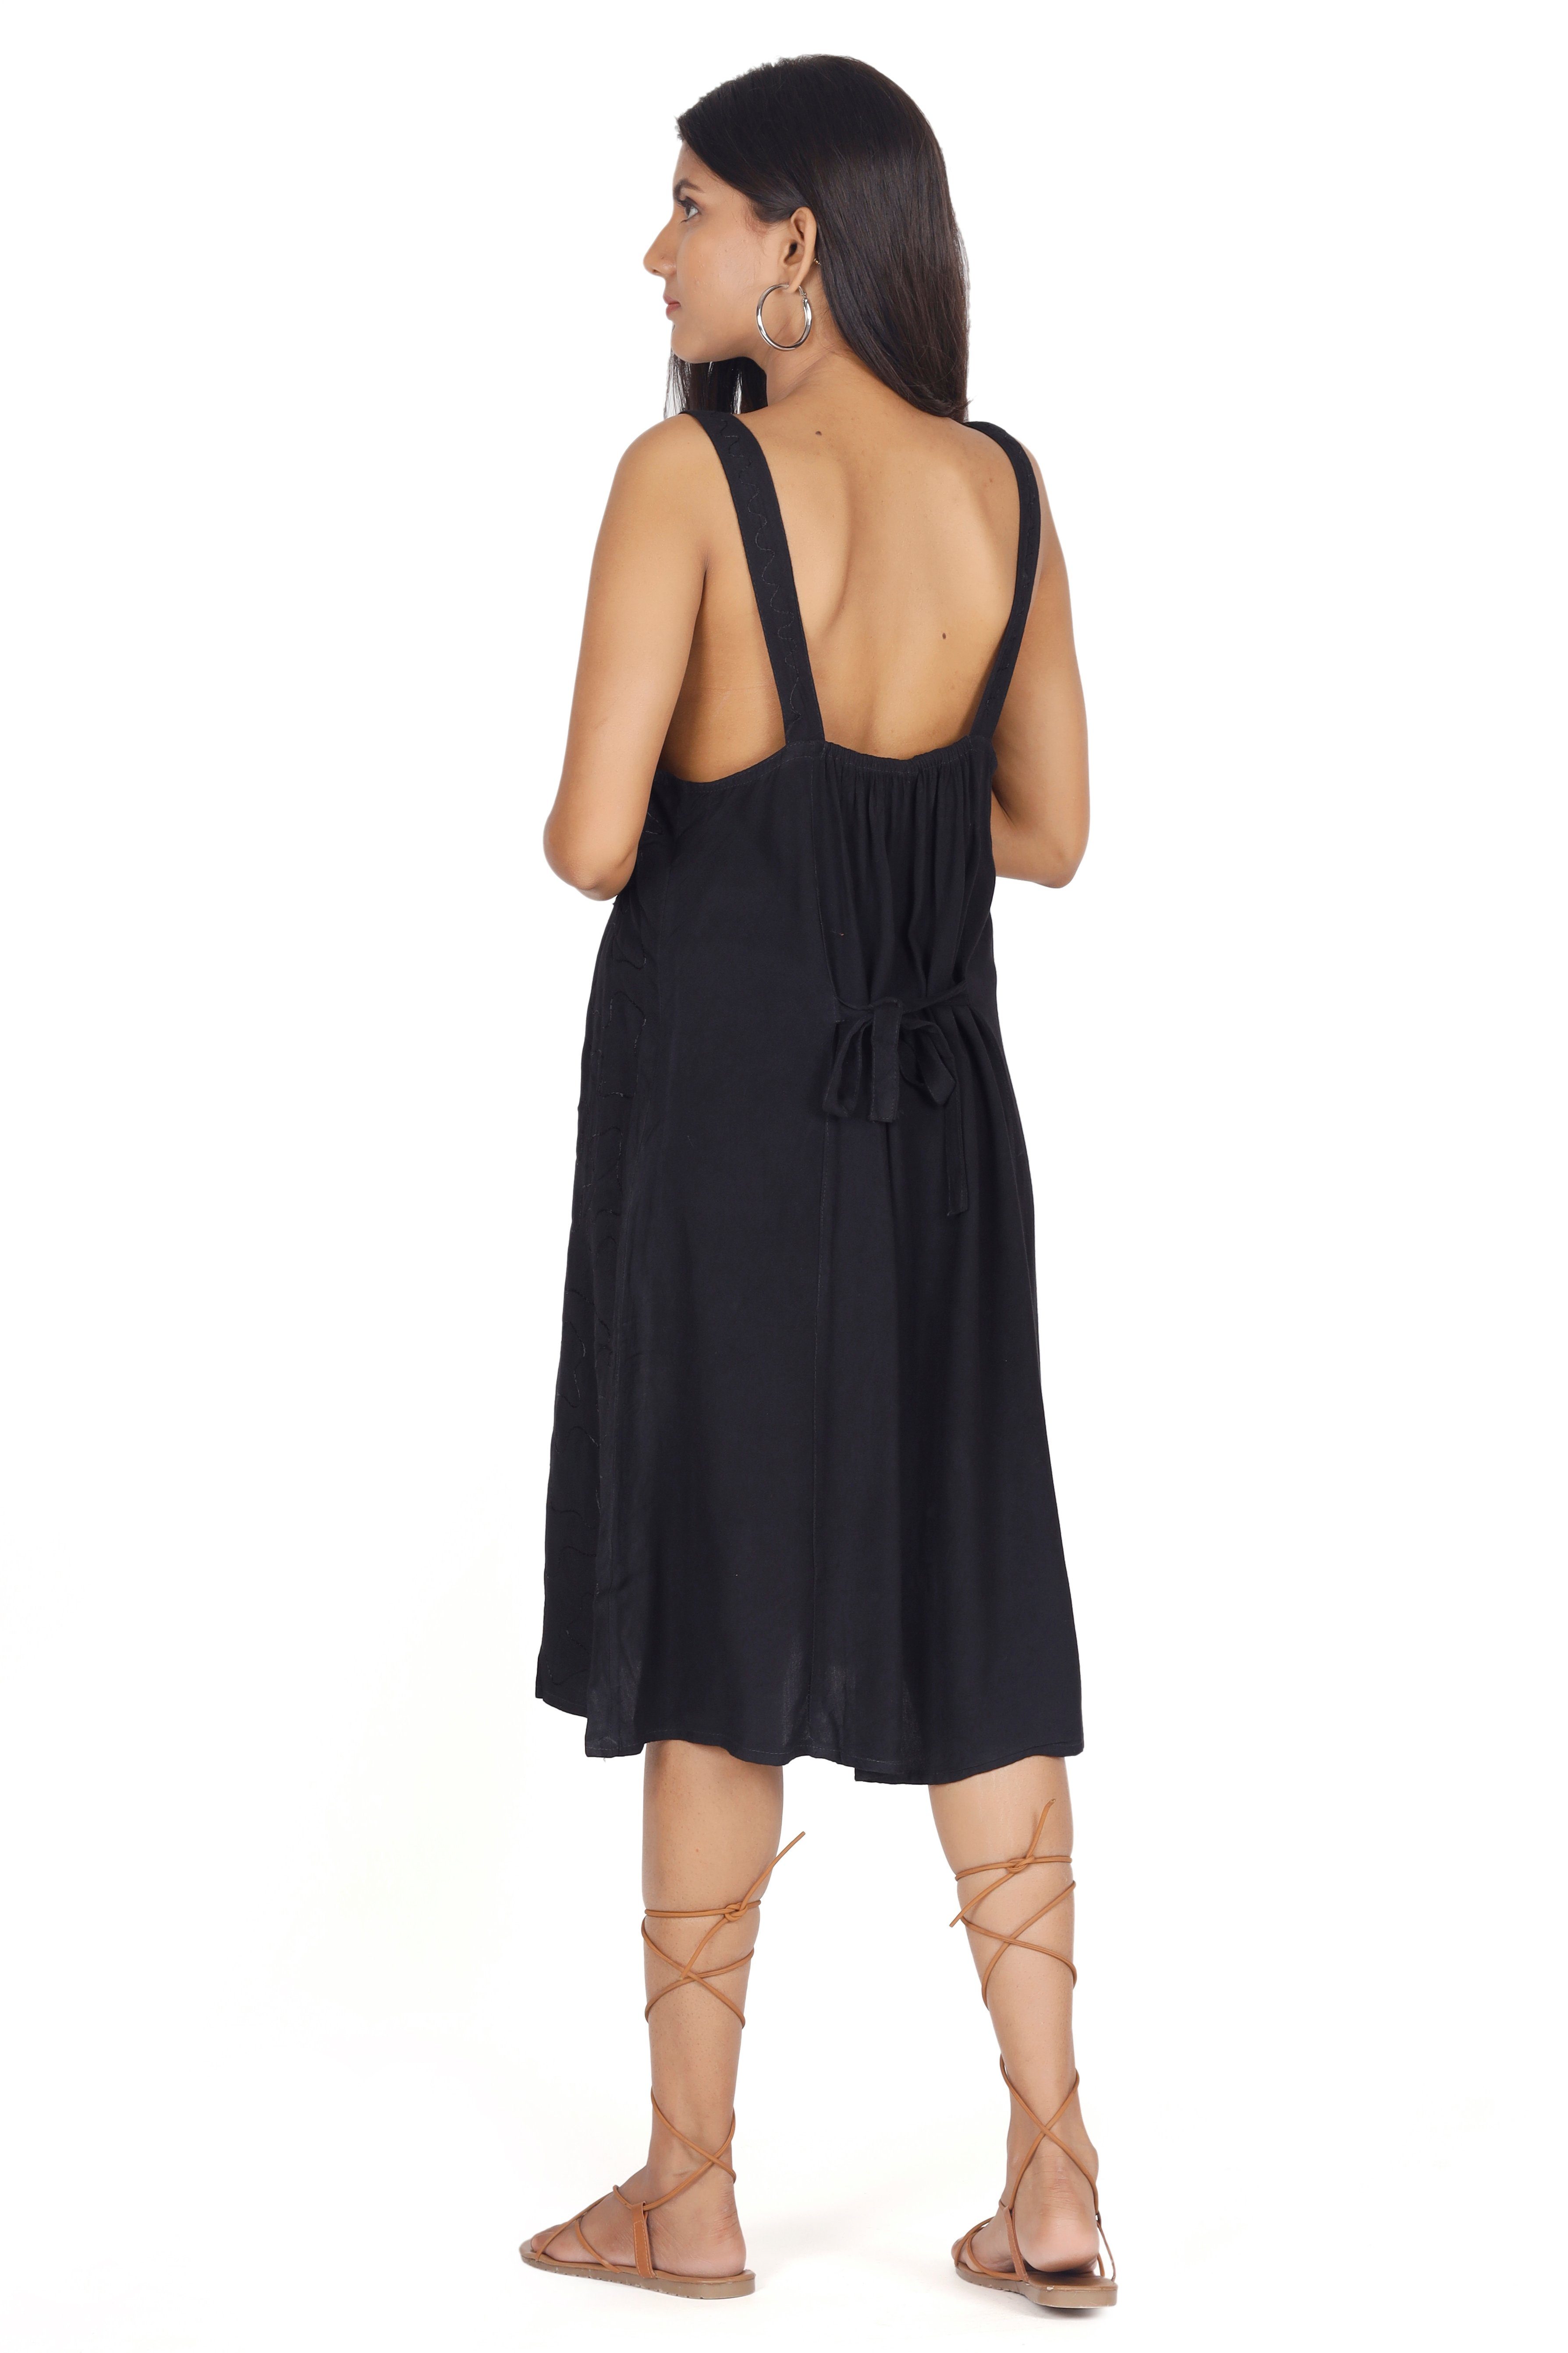 schwarz/Design alternative indisches Guru-Shop Minikleid Midikleid 23 -.. Boho Besticktes Bekleidung Kleid,